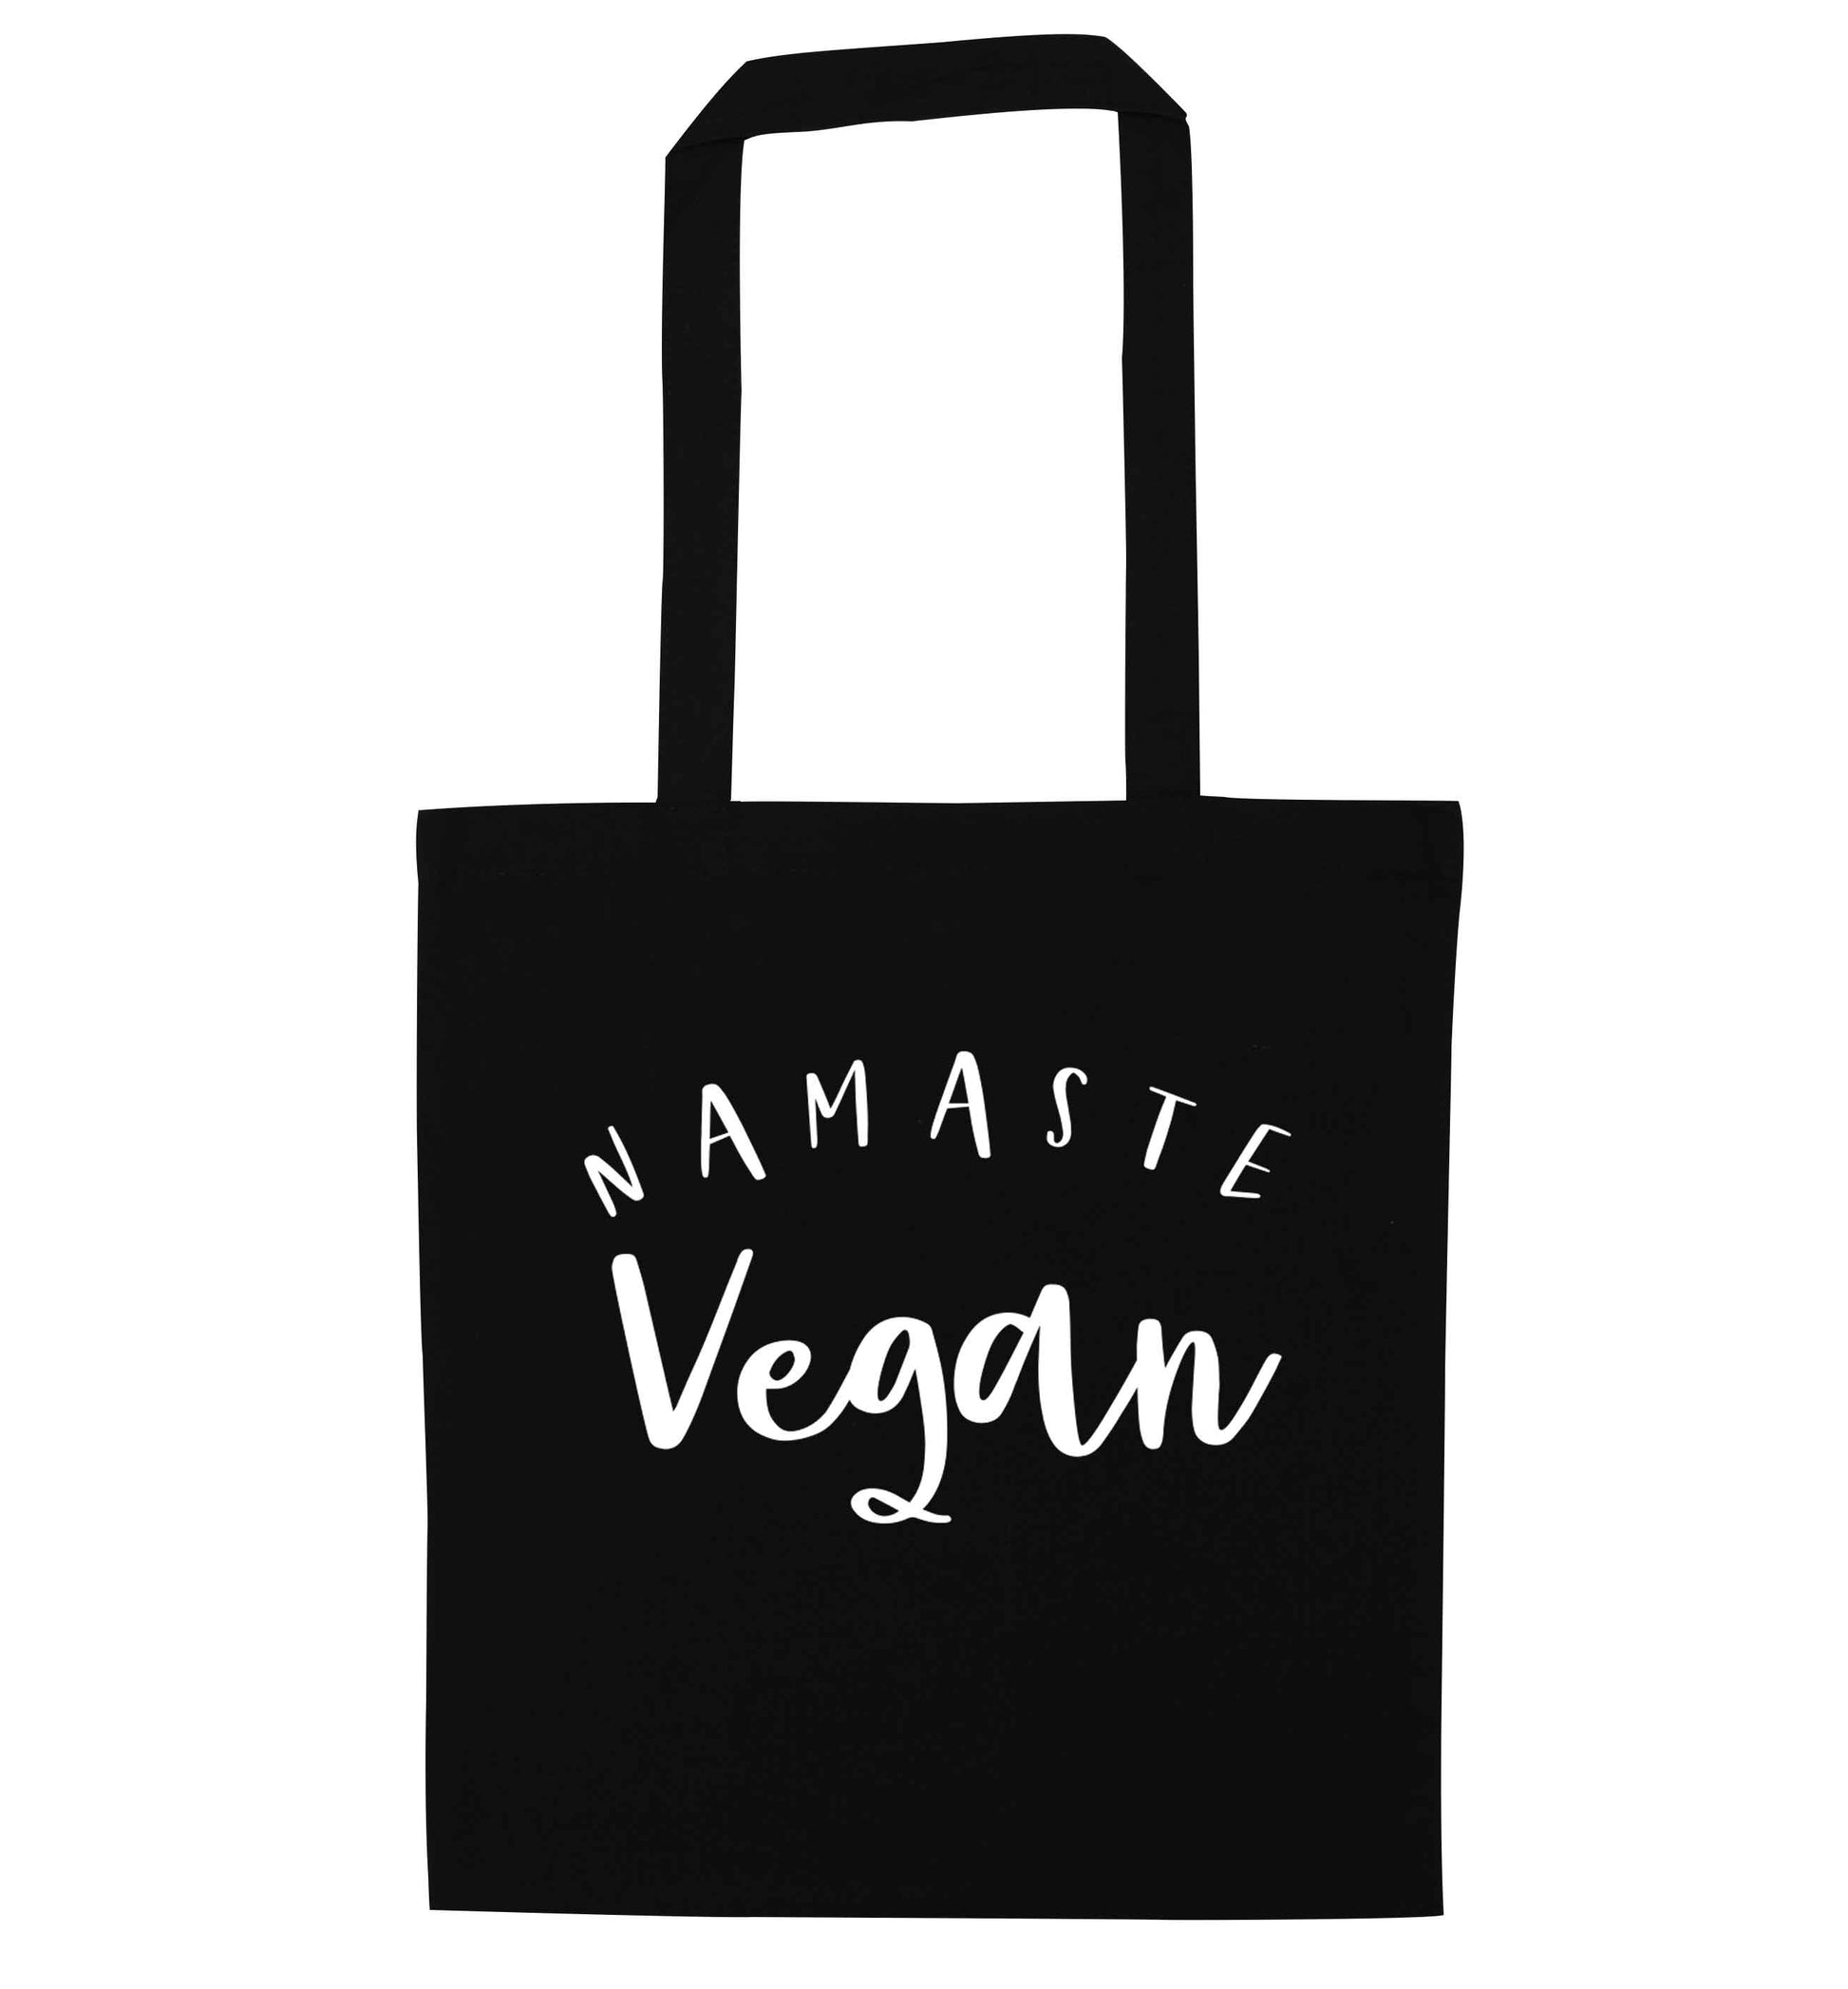 Namaste vegan black tote bag